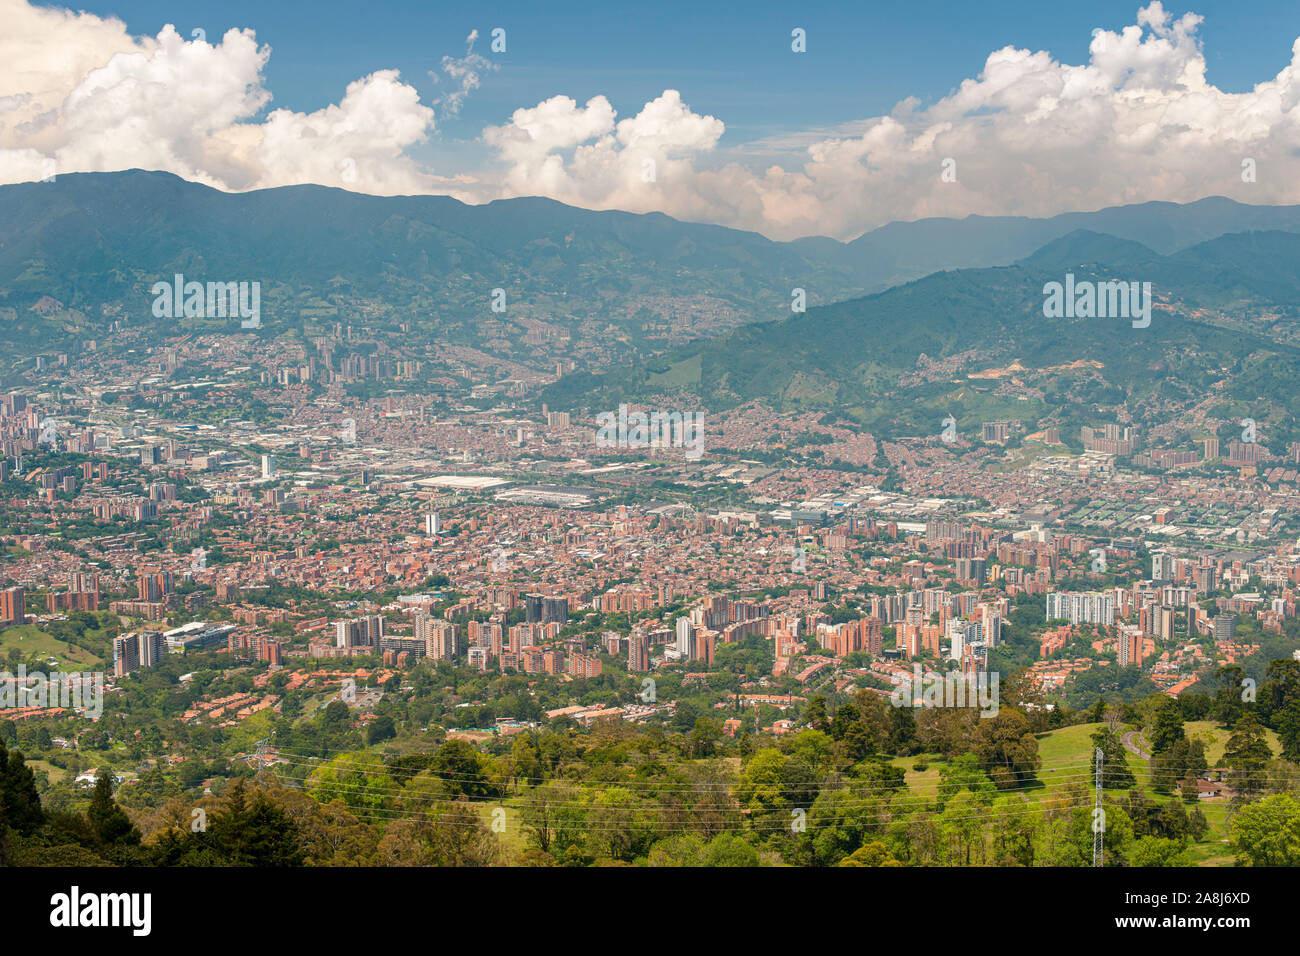 Vue de la ville de Medellin, Colombie. Banque D'Images